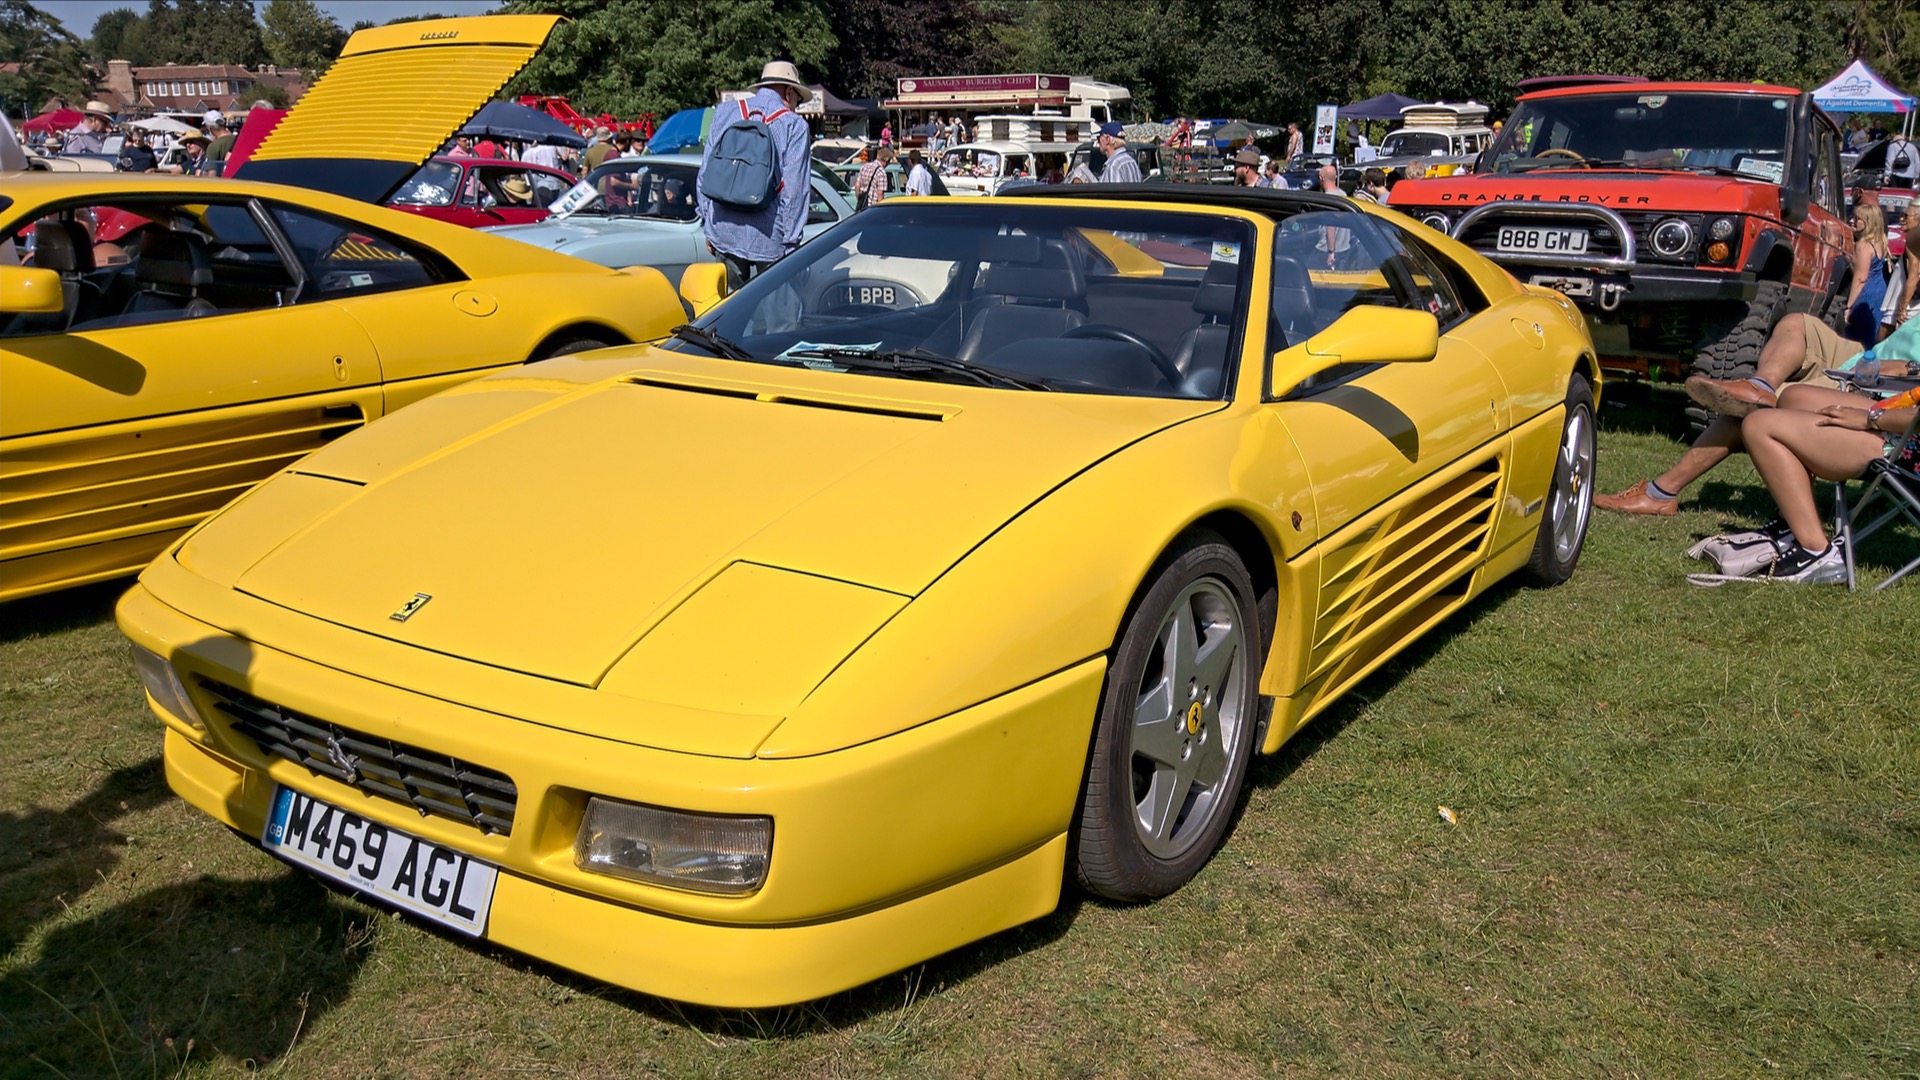 Ferrari 348